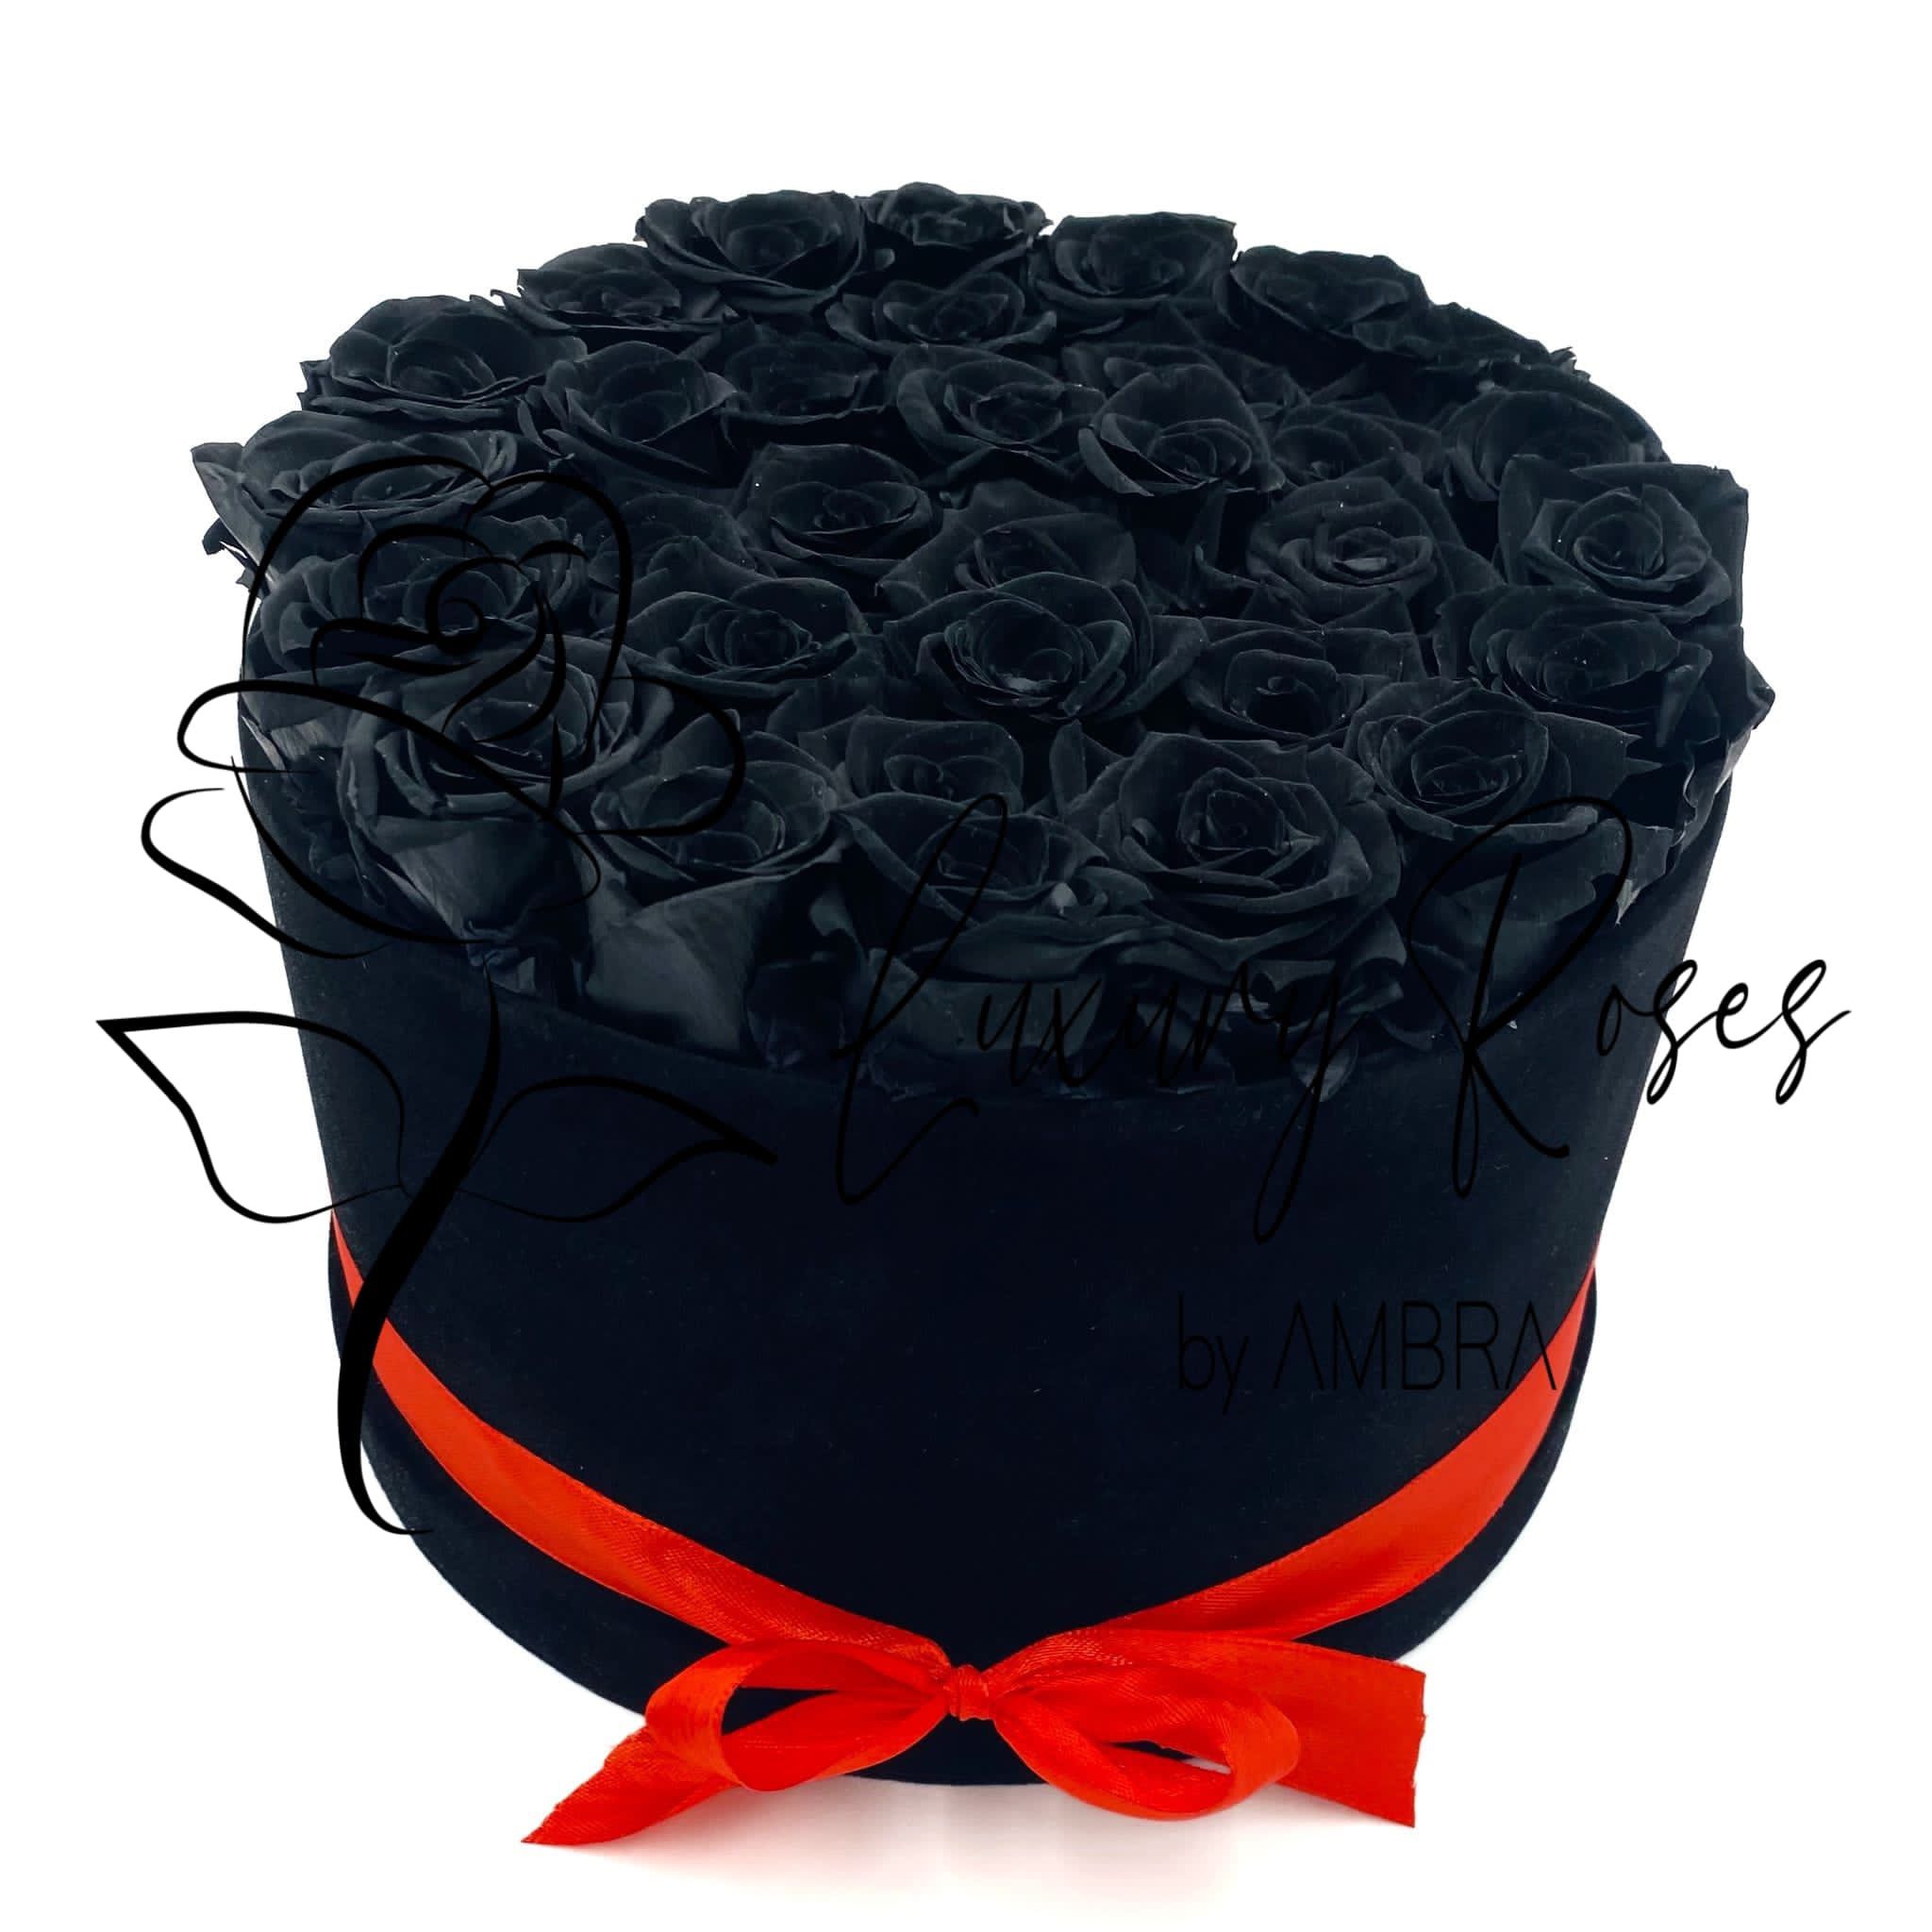 black Eternal velvet box roses real preserved roses flowers immortal roses anniversary birthday immortal lasting Velvet Box Present